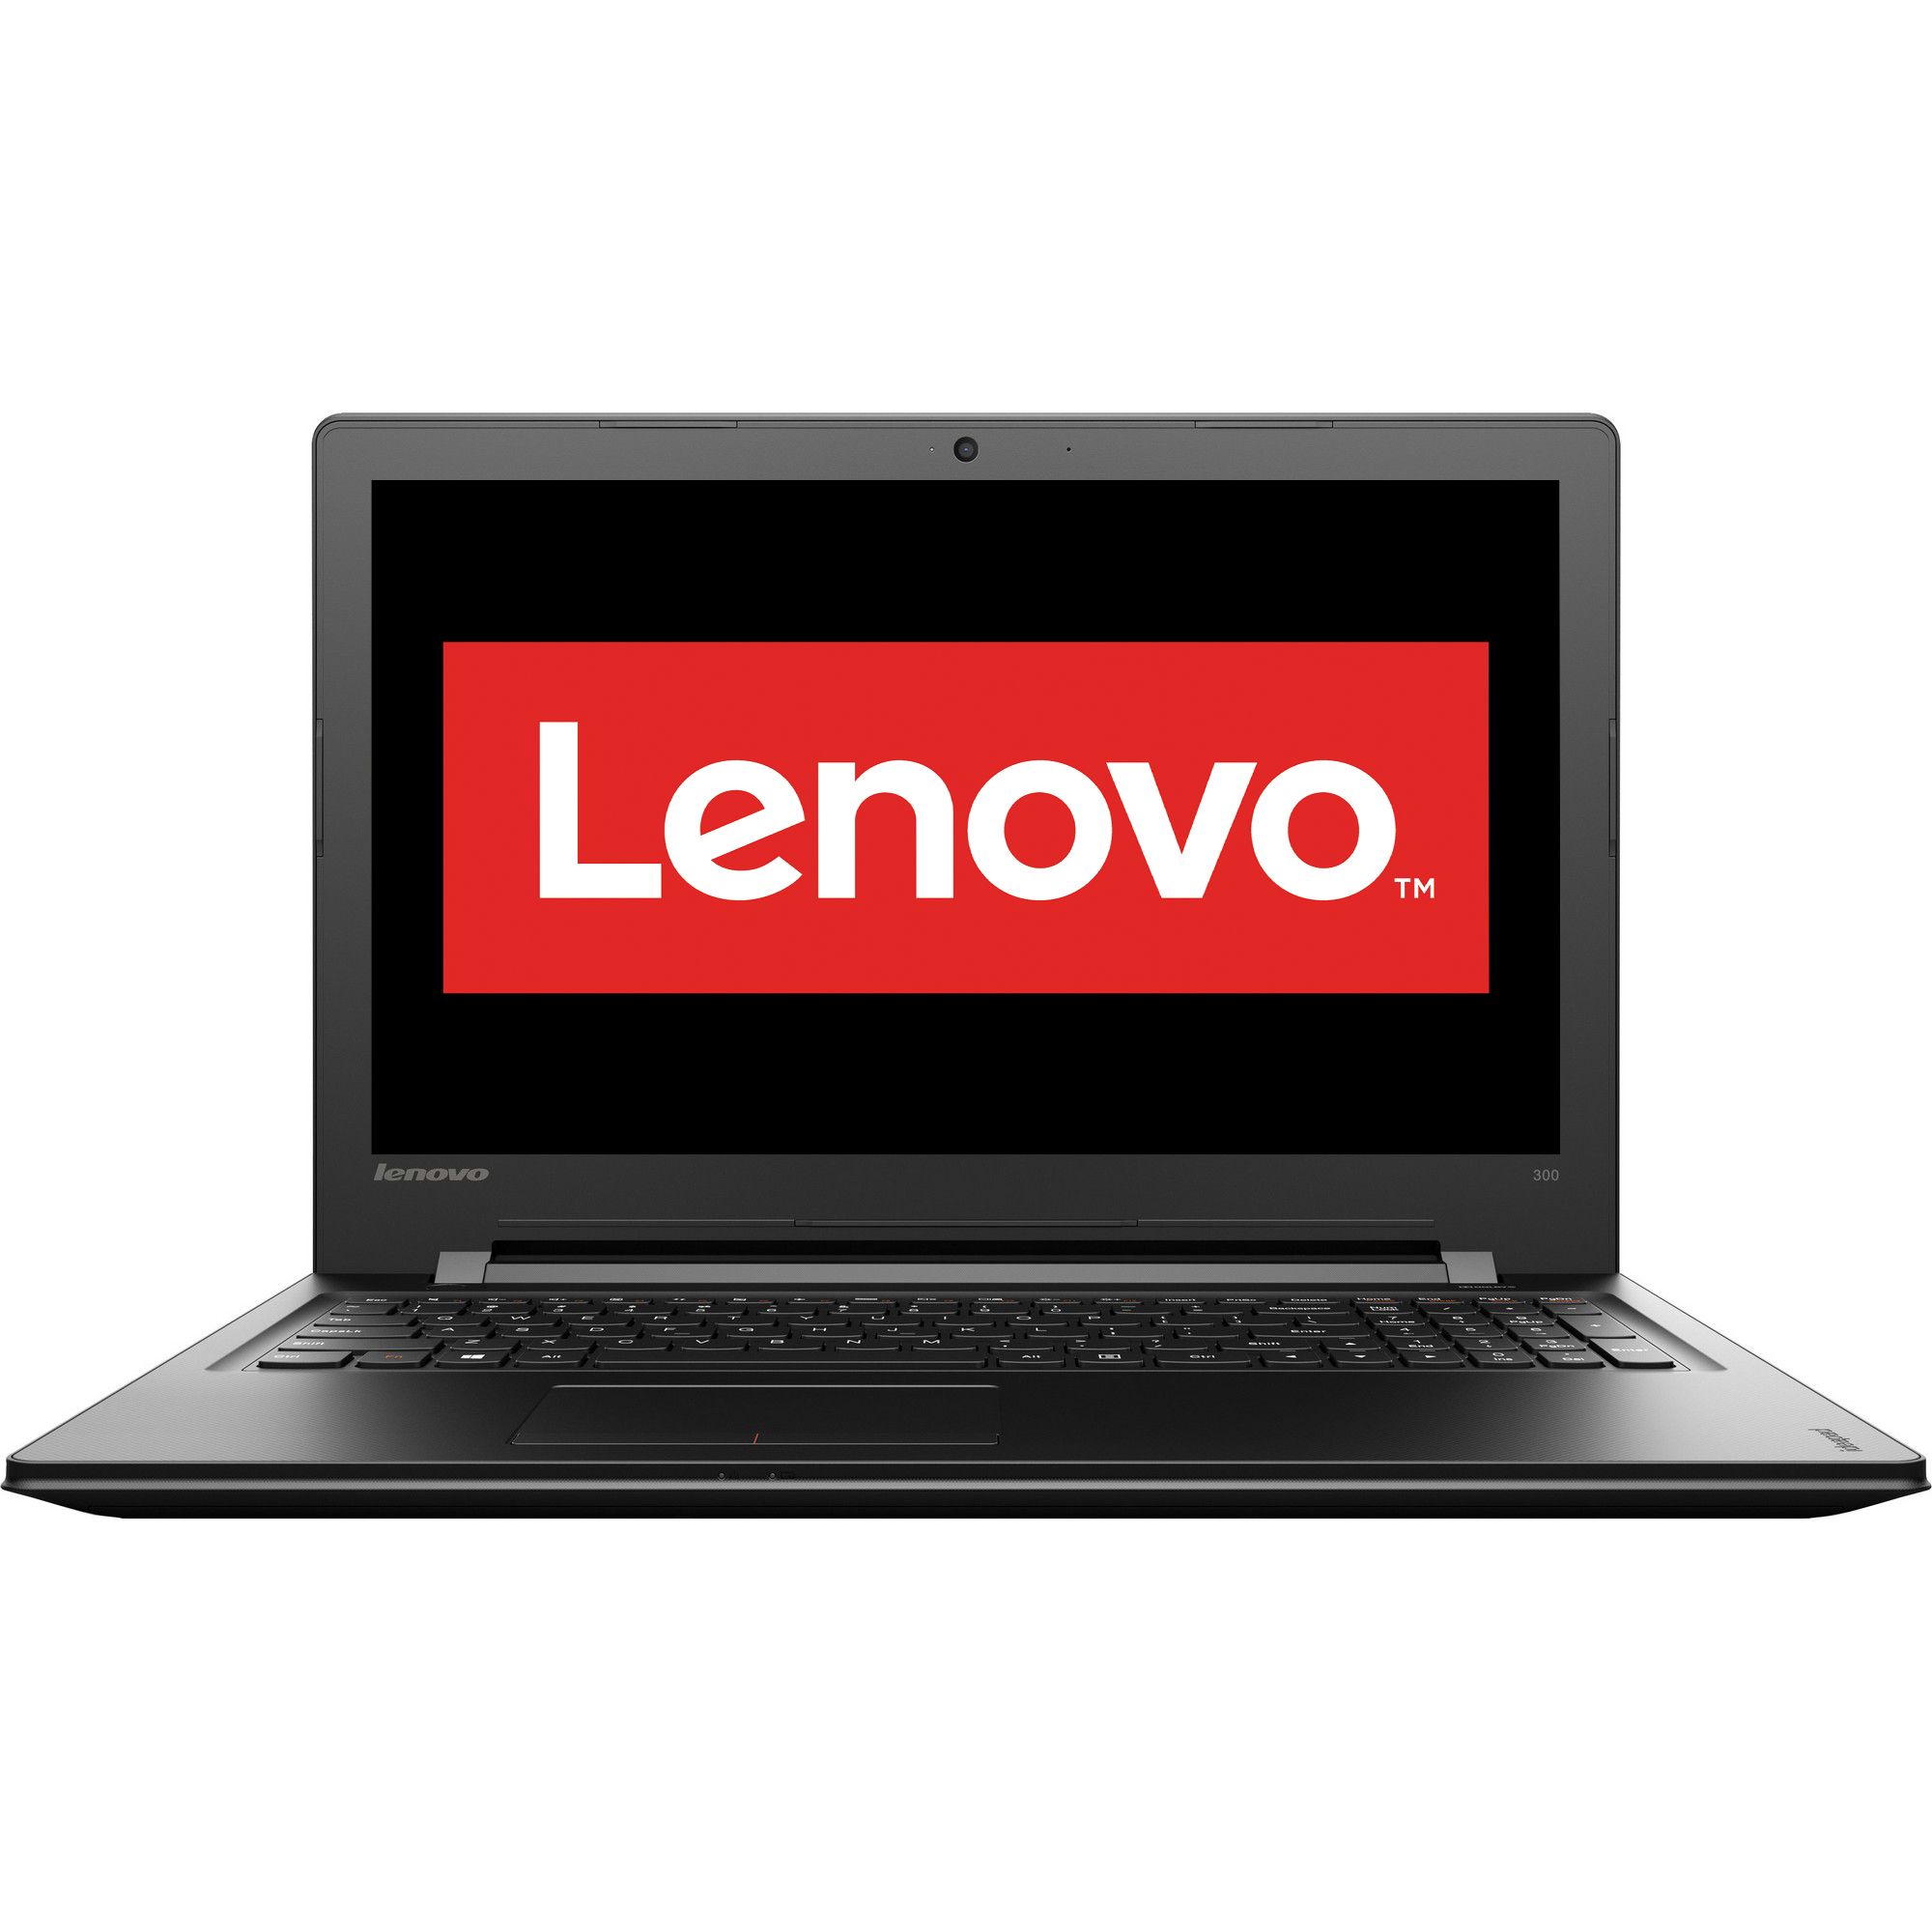 Laptop Lenovo IdeaPad 300-15ISK, Intel Core i7-6500U, 4GB DDR3, HDD 1TB, AMD Radeon R5 M330 2GB, Free DOS